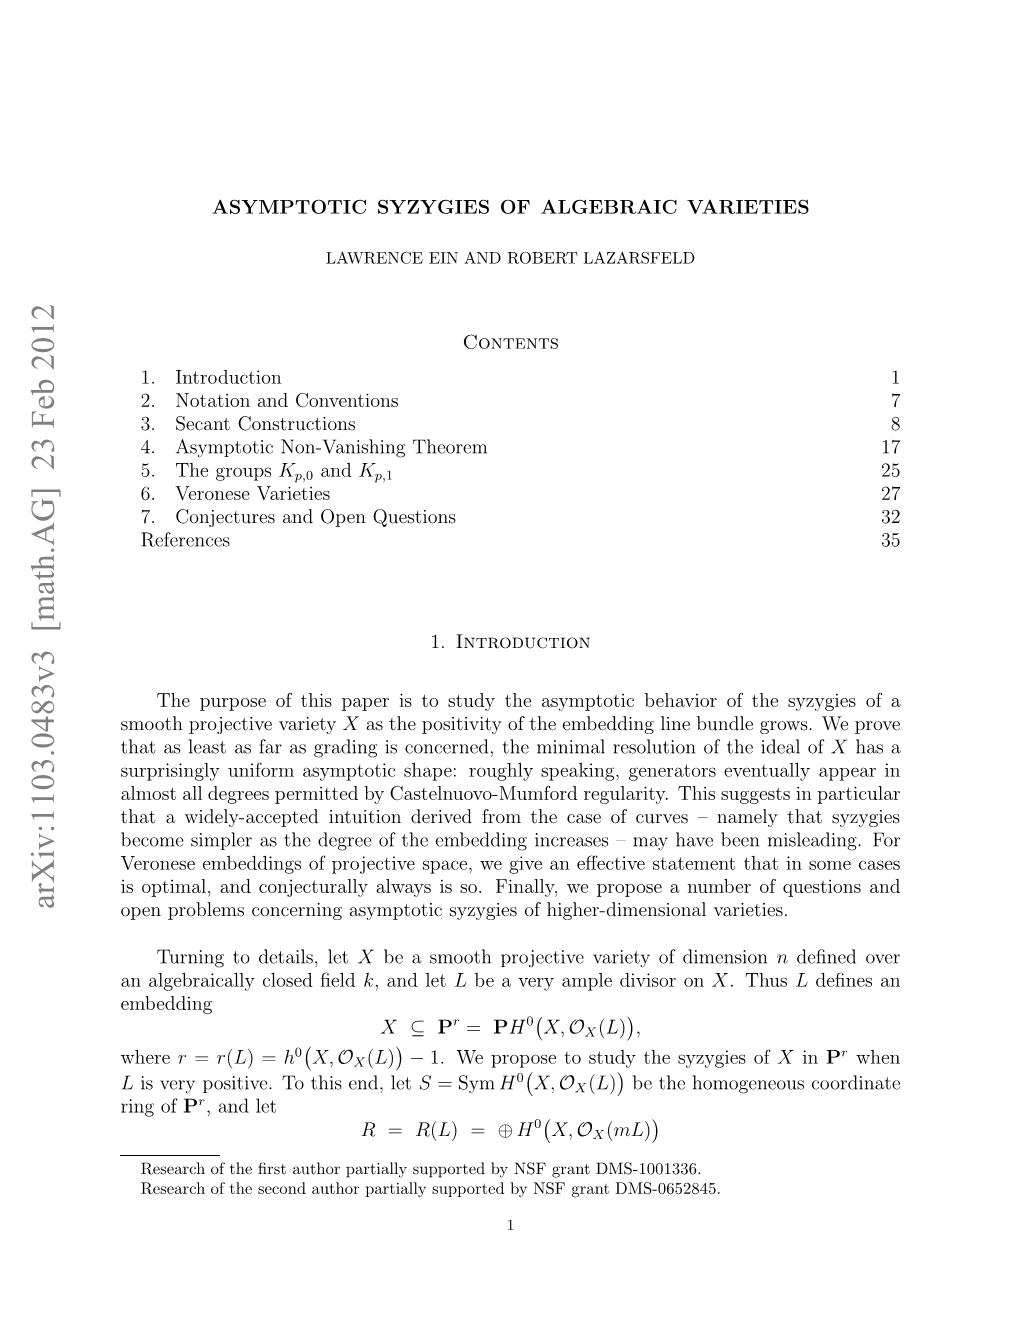 Asymptotic Syzygies of Algebraic Varieties 3